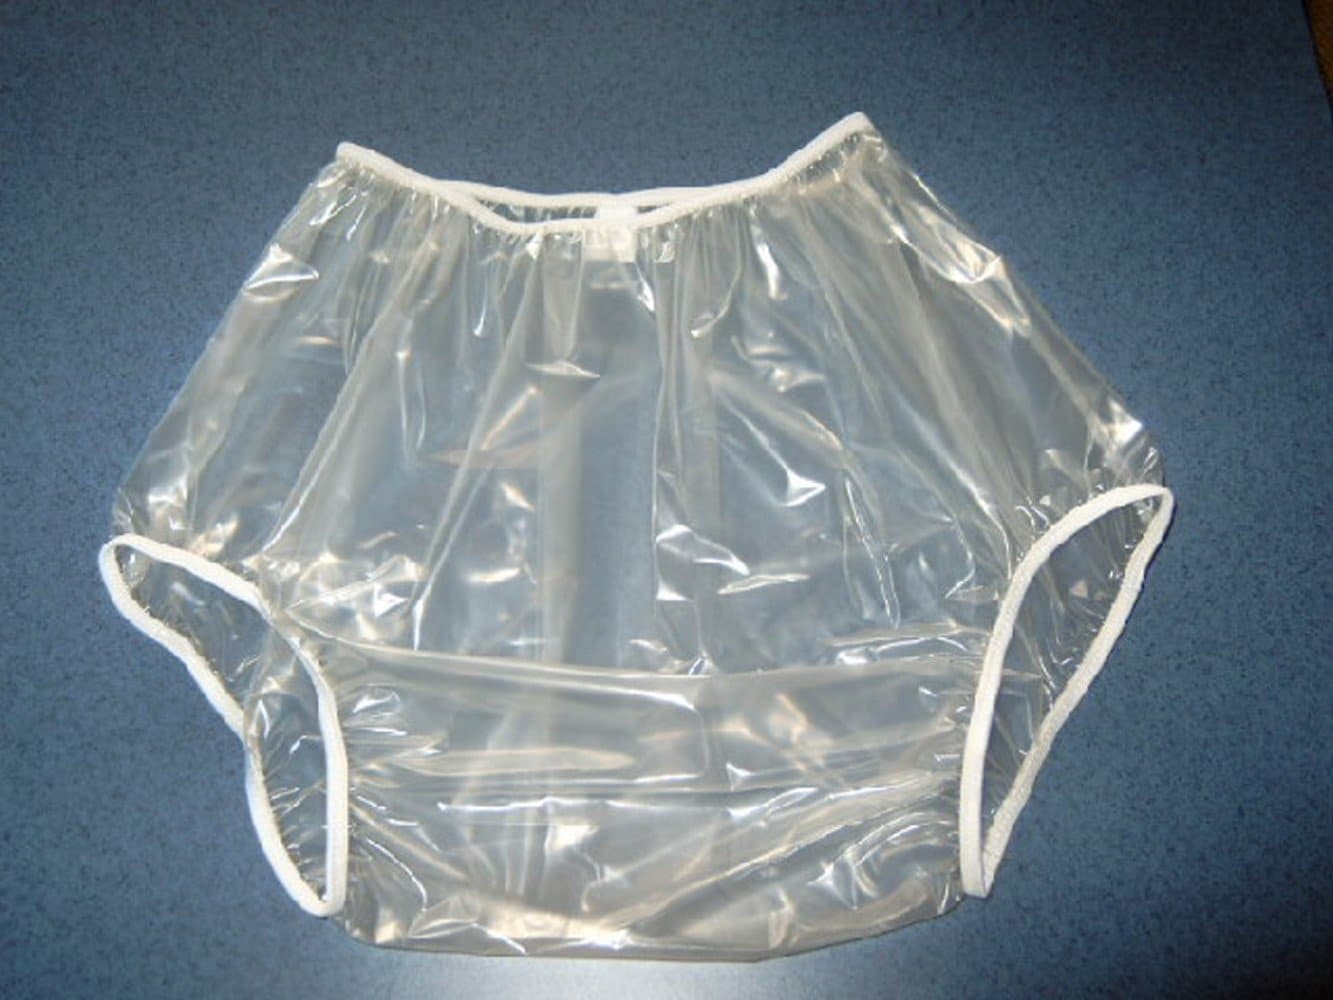 Windelhose Euroflex Gummi-PVC adult baby Inkontinenz (WH-20)